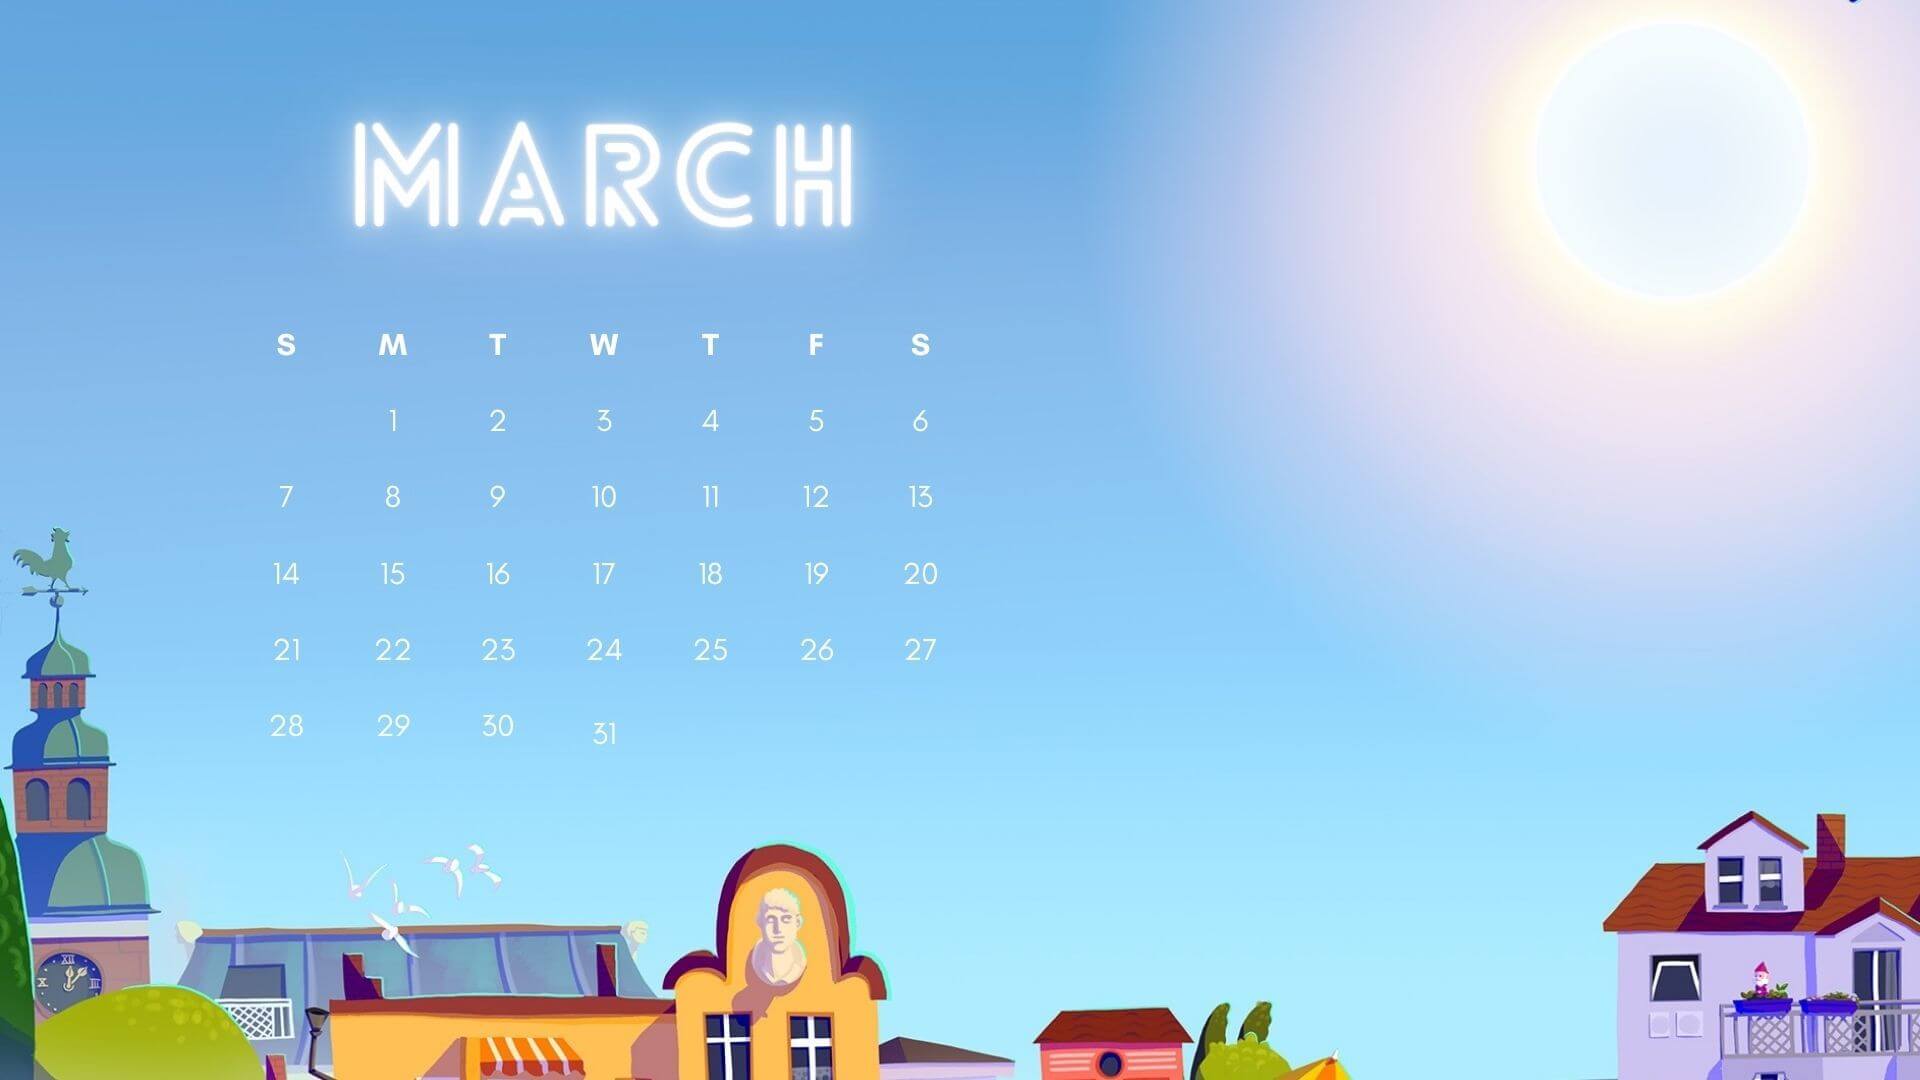 March 2021 Calendar Wallpaper for Laptop